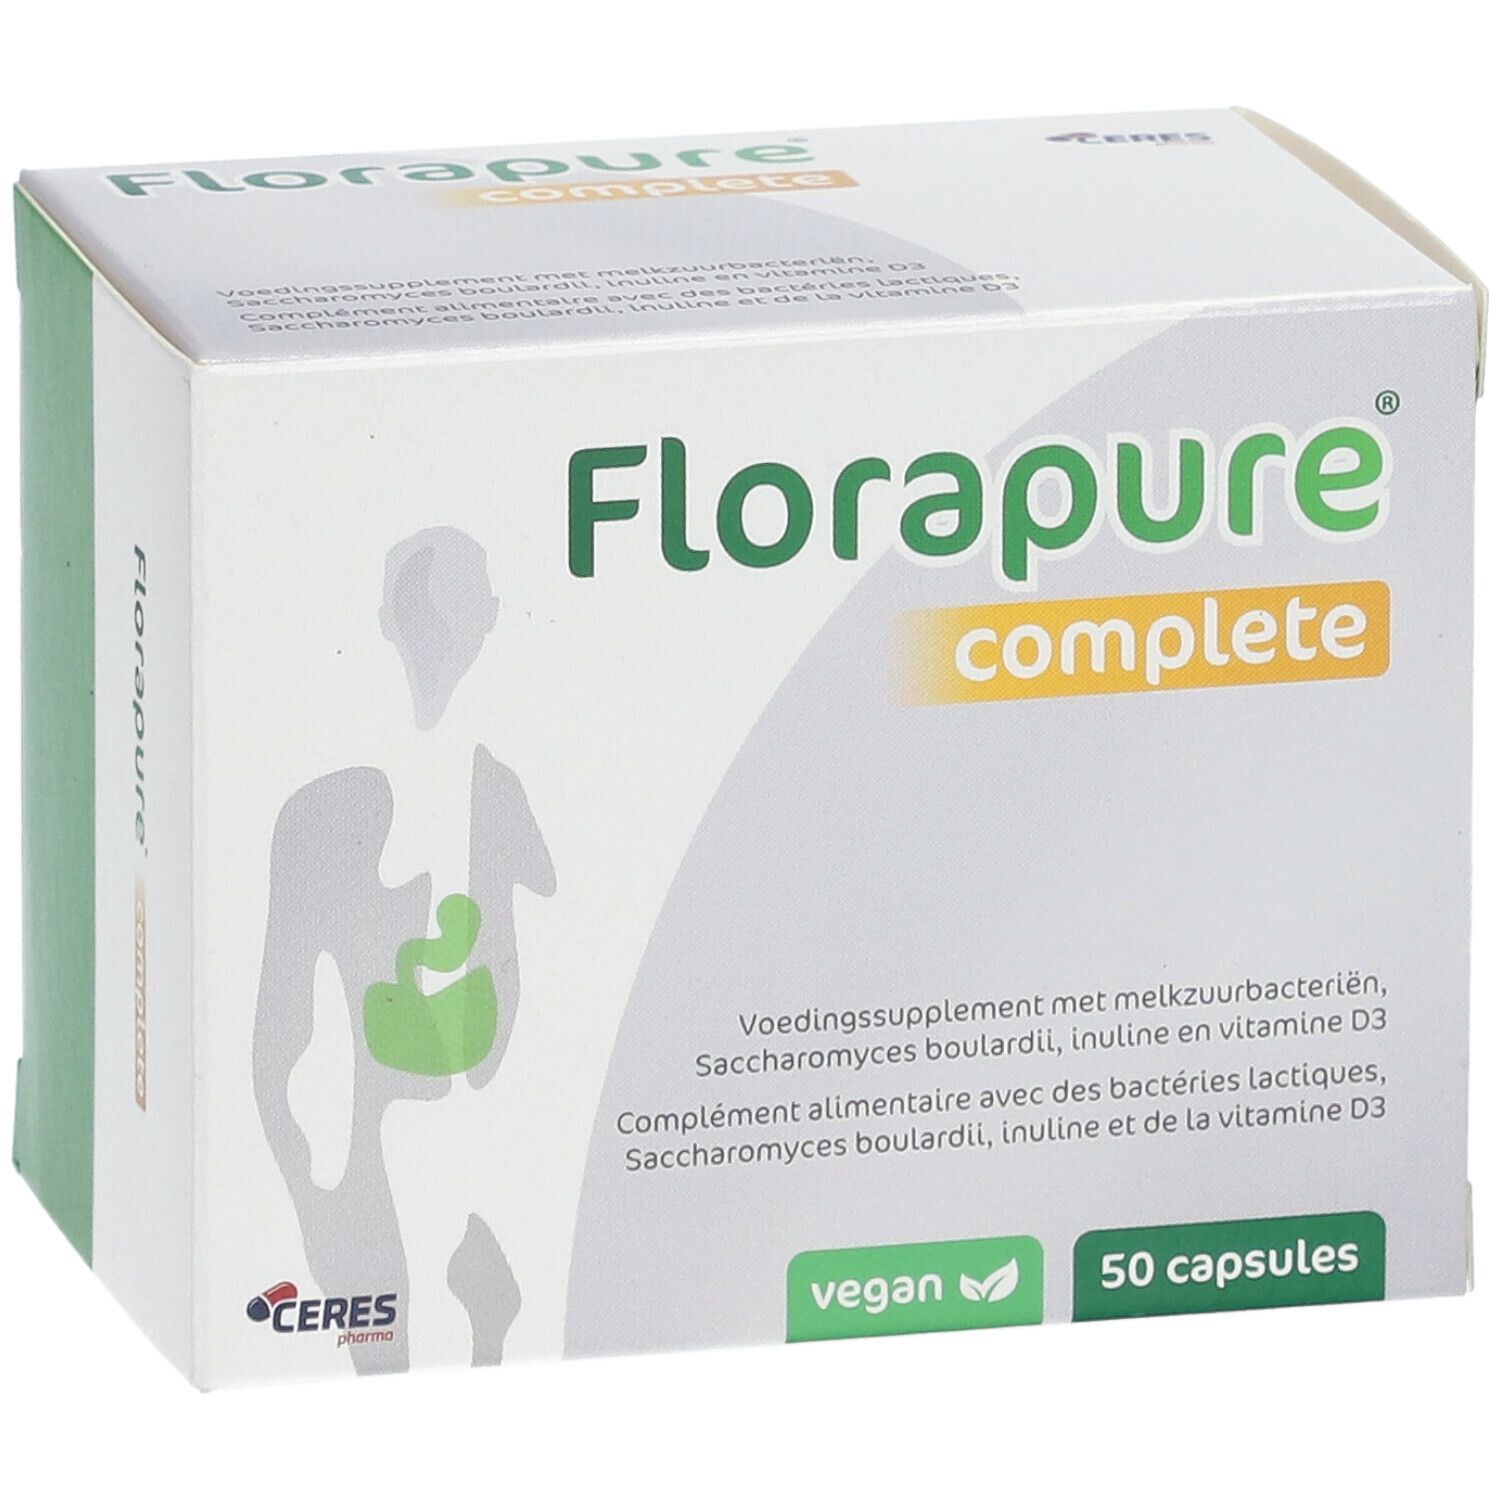 FloraPure® Complete